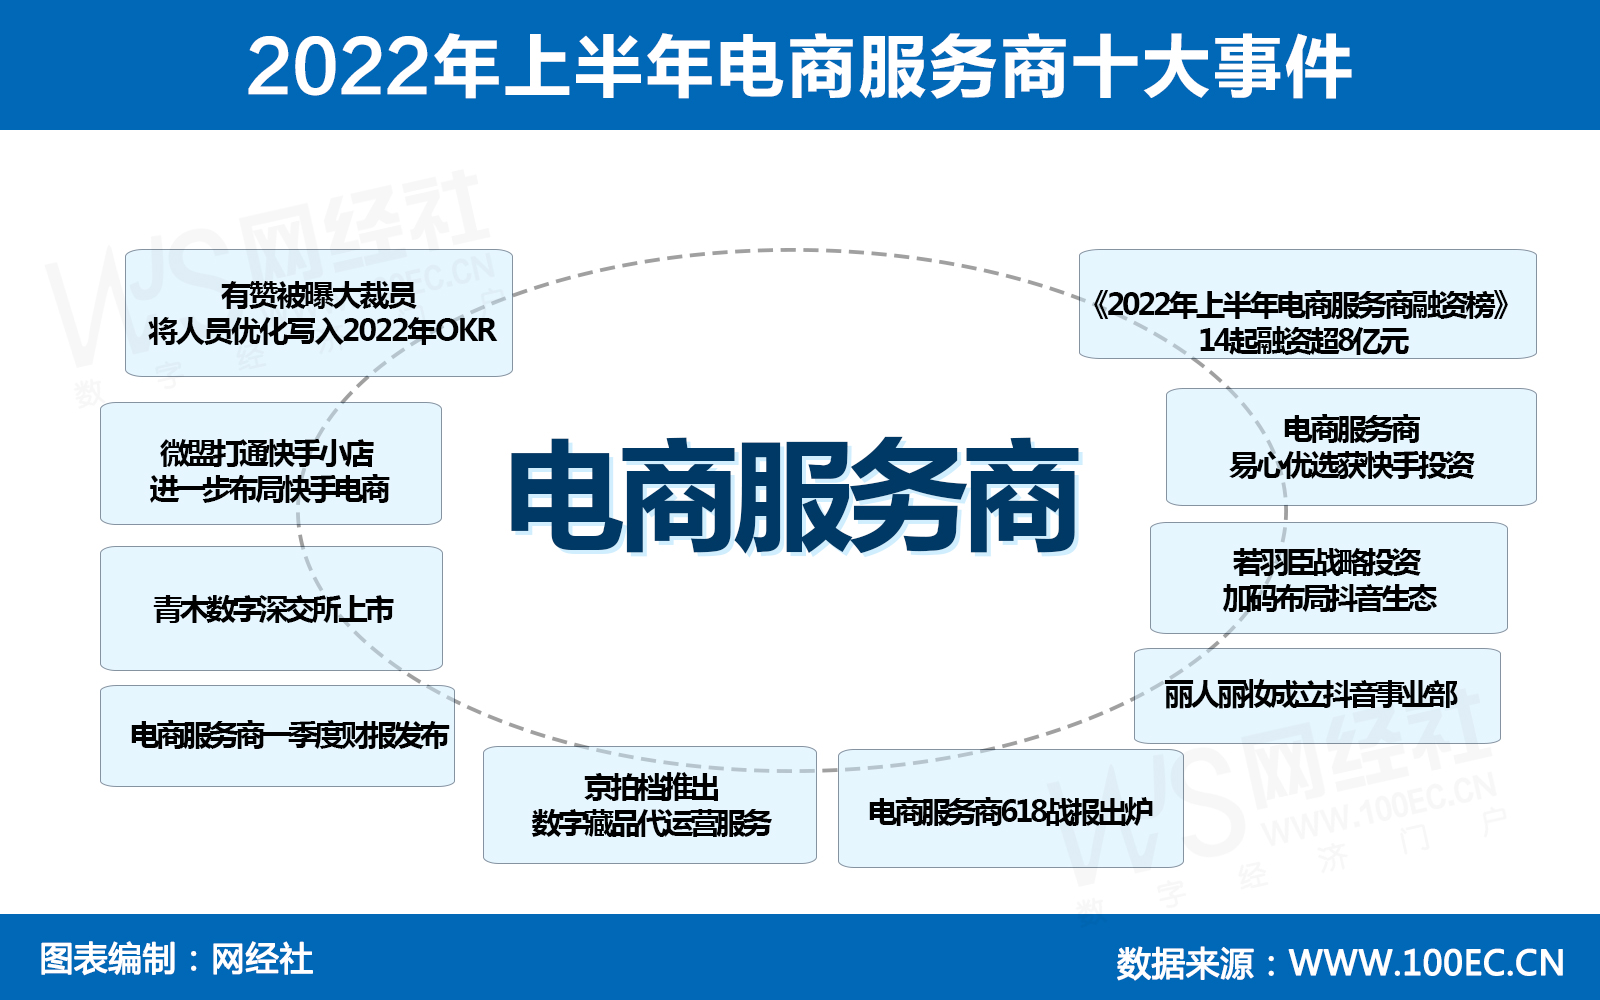 2022年上半年电商服务商十大事件.jpg